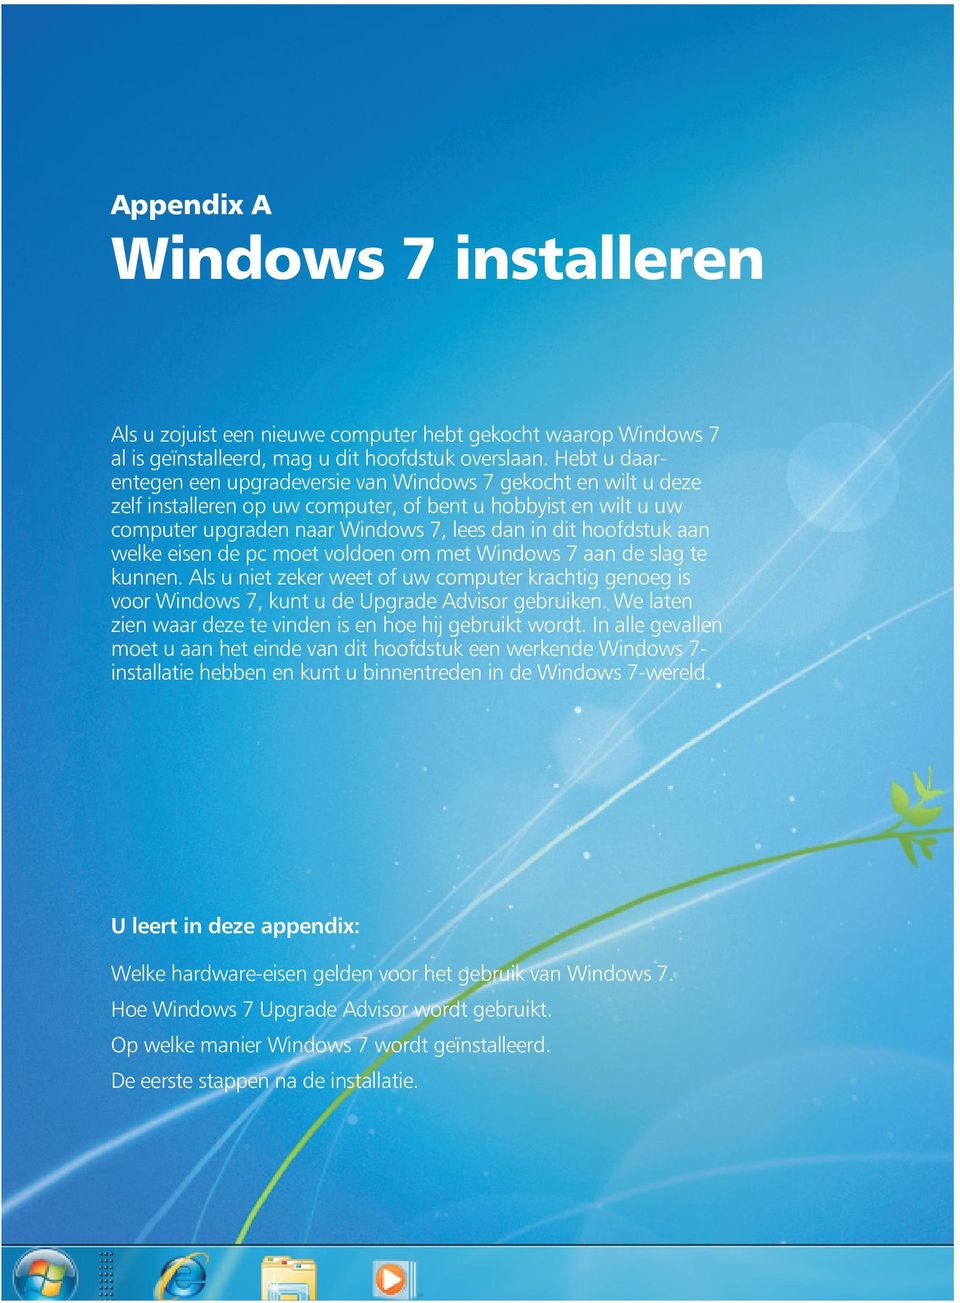 aan welke eisen de pc moet voldoen om met Windows 7 aan de slag te kunnen. Als u niet zeker weet of uw computer krachtig genoeg is voor Windows 7, kunt u de Upgrade Advisor gebruiken.